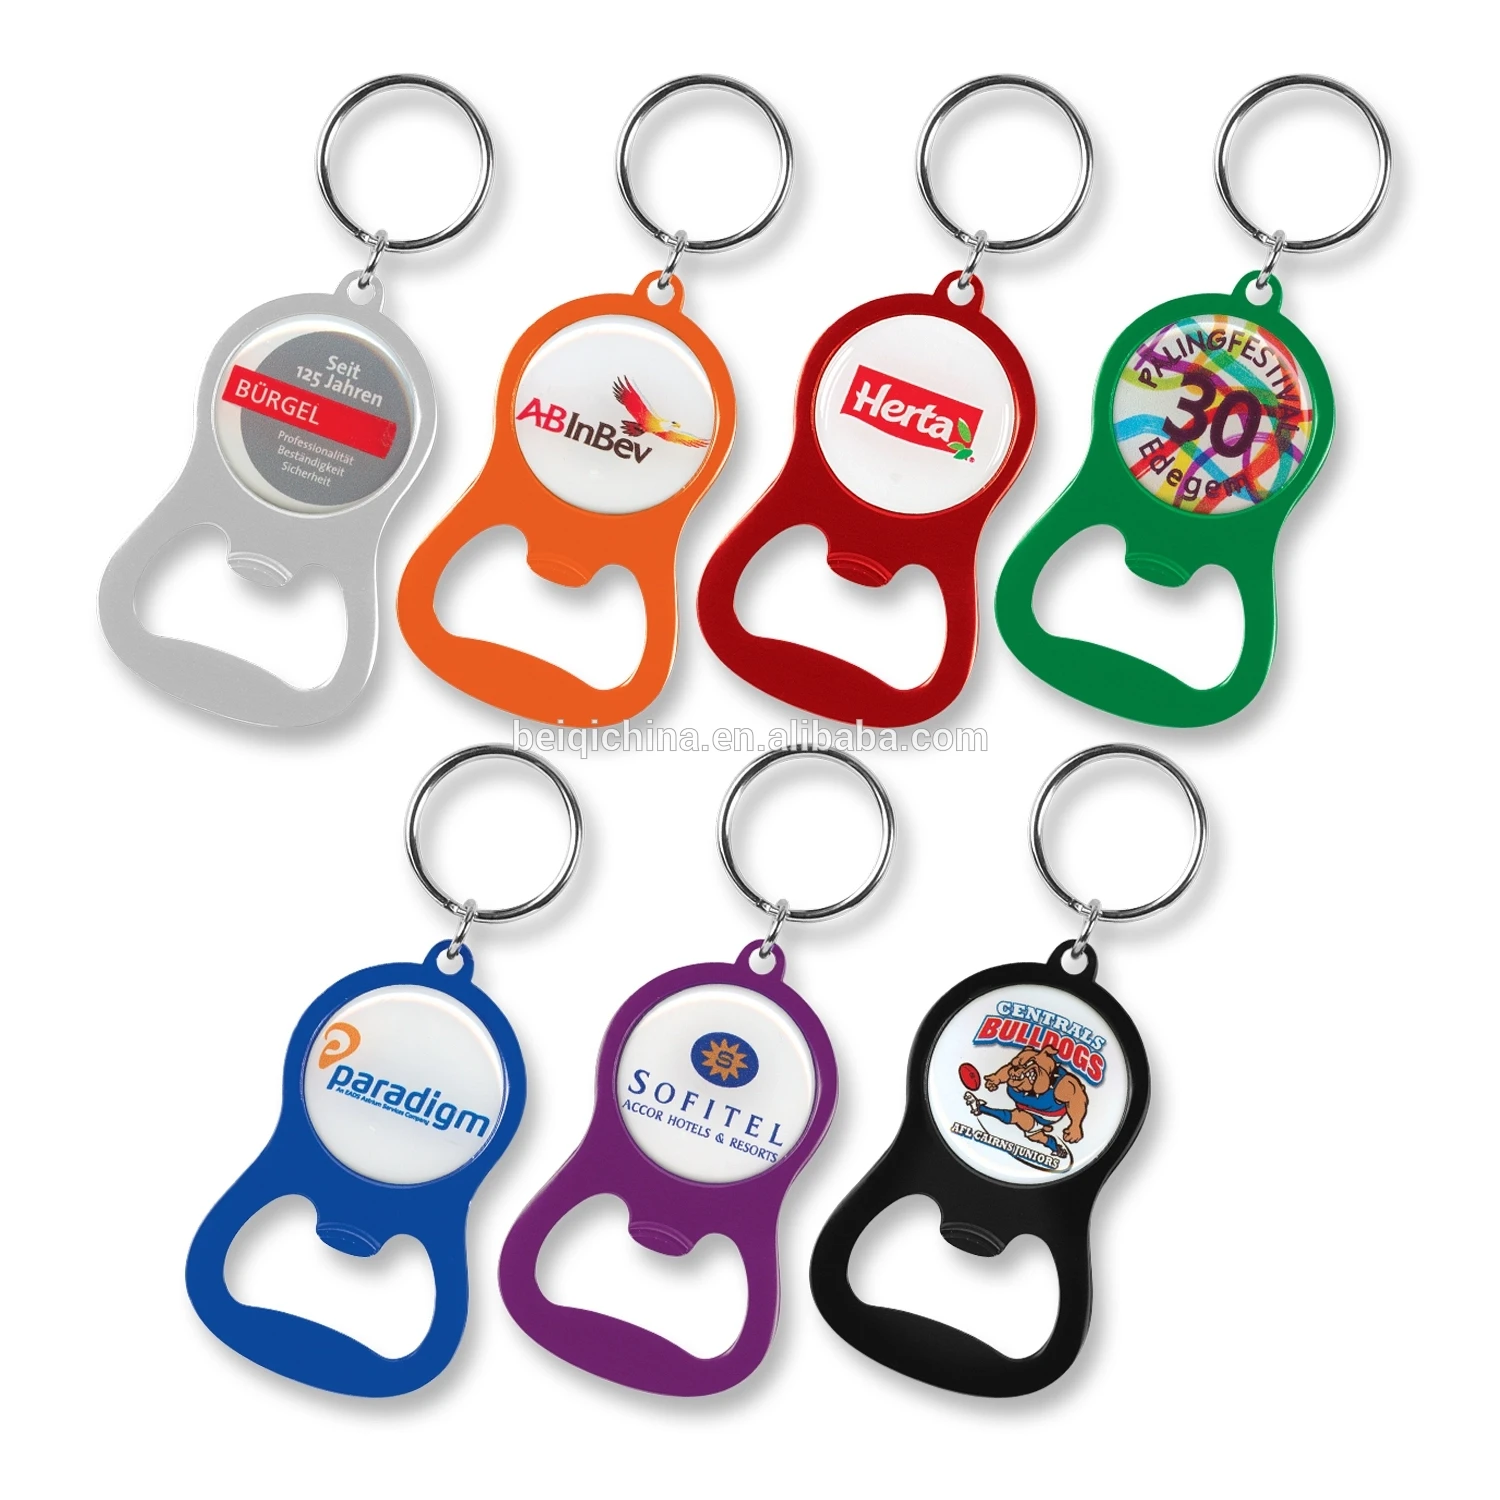 Bottle opener keychain, metal bottle opener with logo, aluminum bottle opener